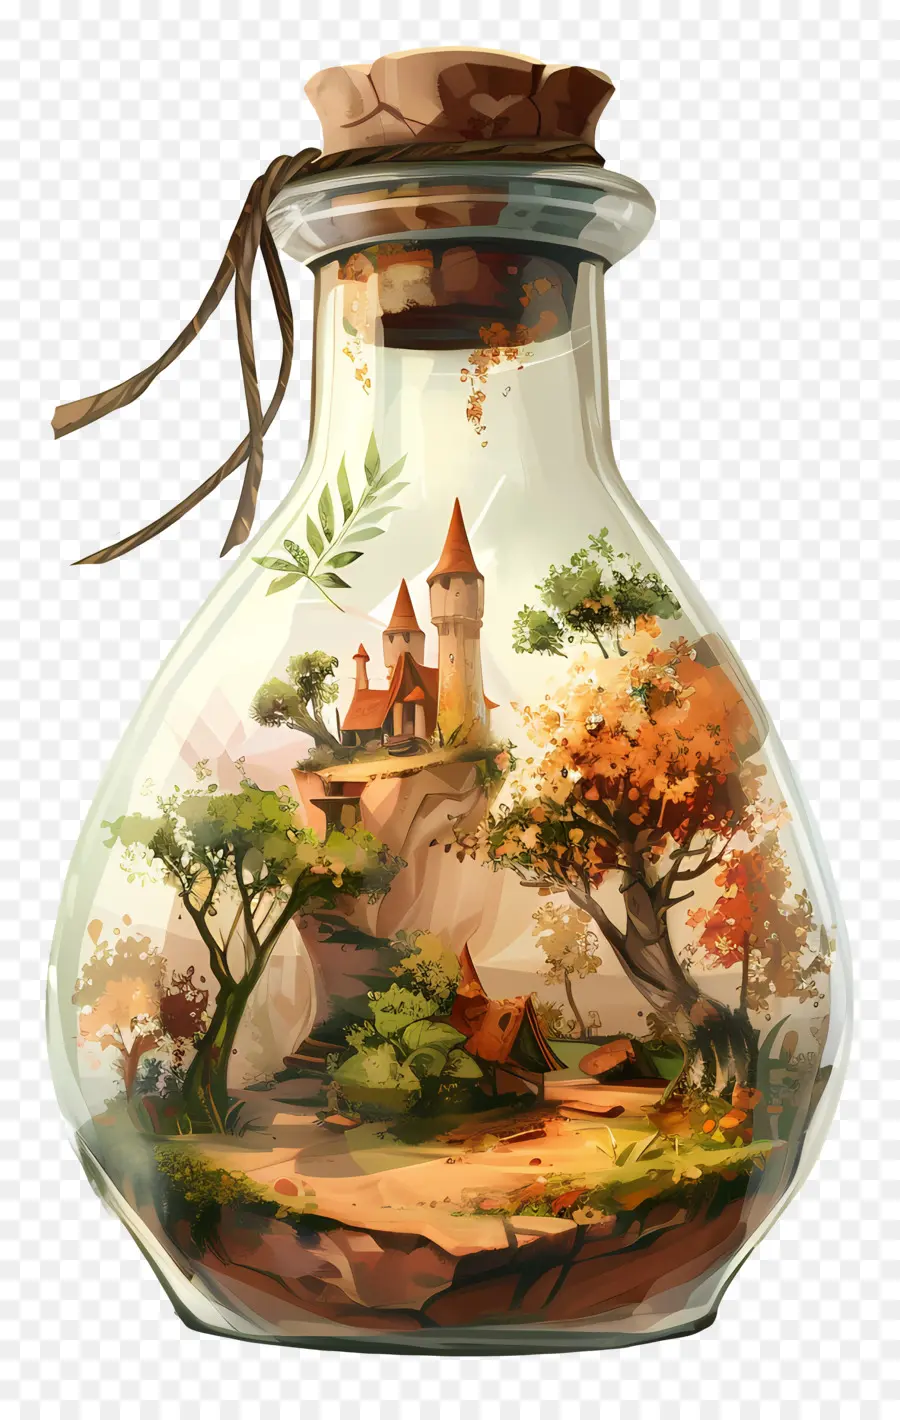 Wishing Bottle Water Bottle Castle Tree River Teatro - Bottiglia di vetro con immagine e acqua del castello